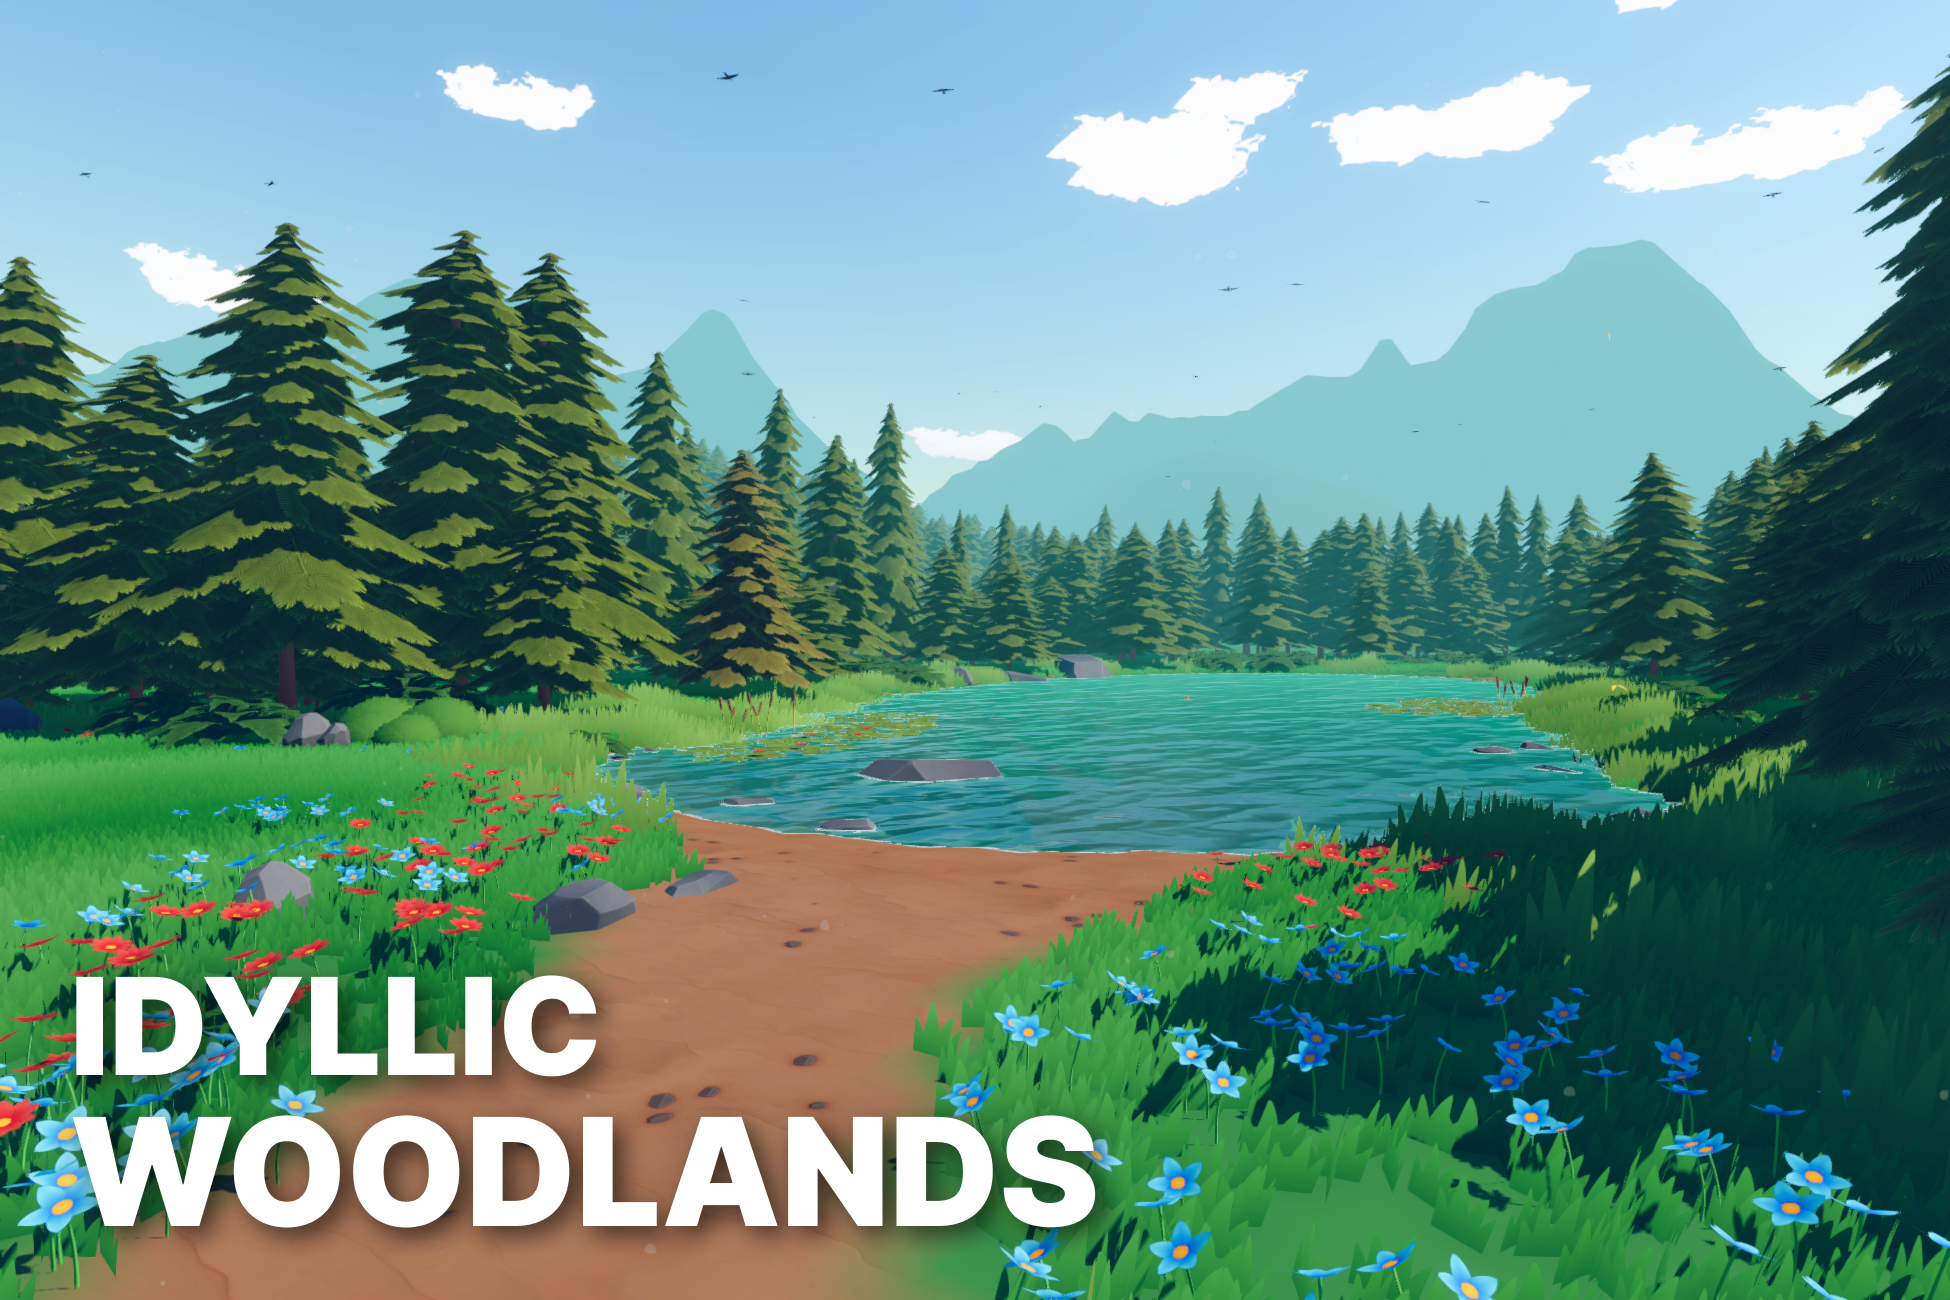 Idyllic Woodlands - Stylized Environment for Unity